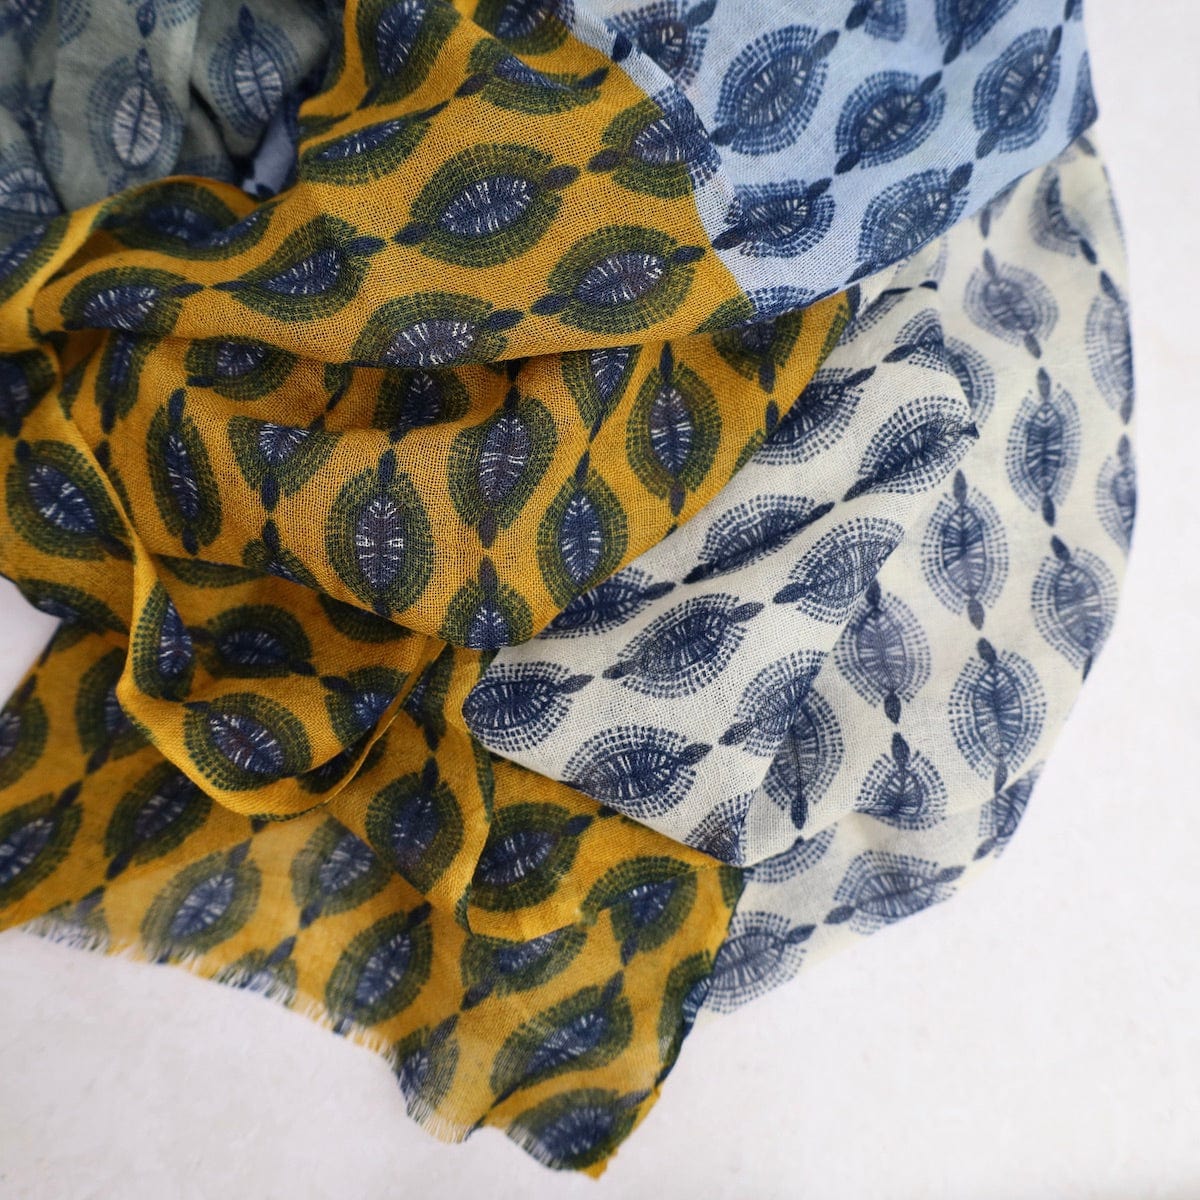 SCRF Kiana Multi Leaf Wool Scarf & Wrap in Grey, Mustard, & Blue